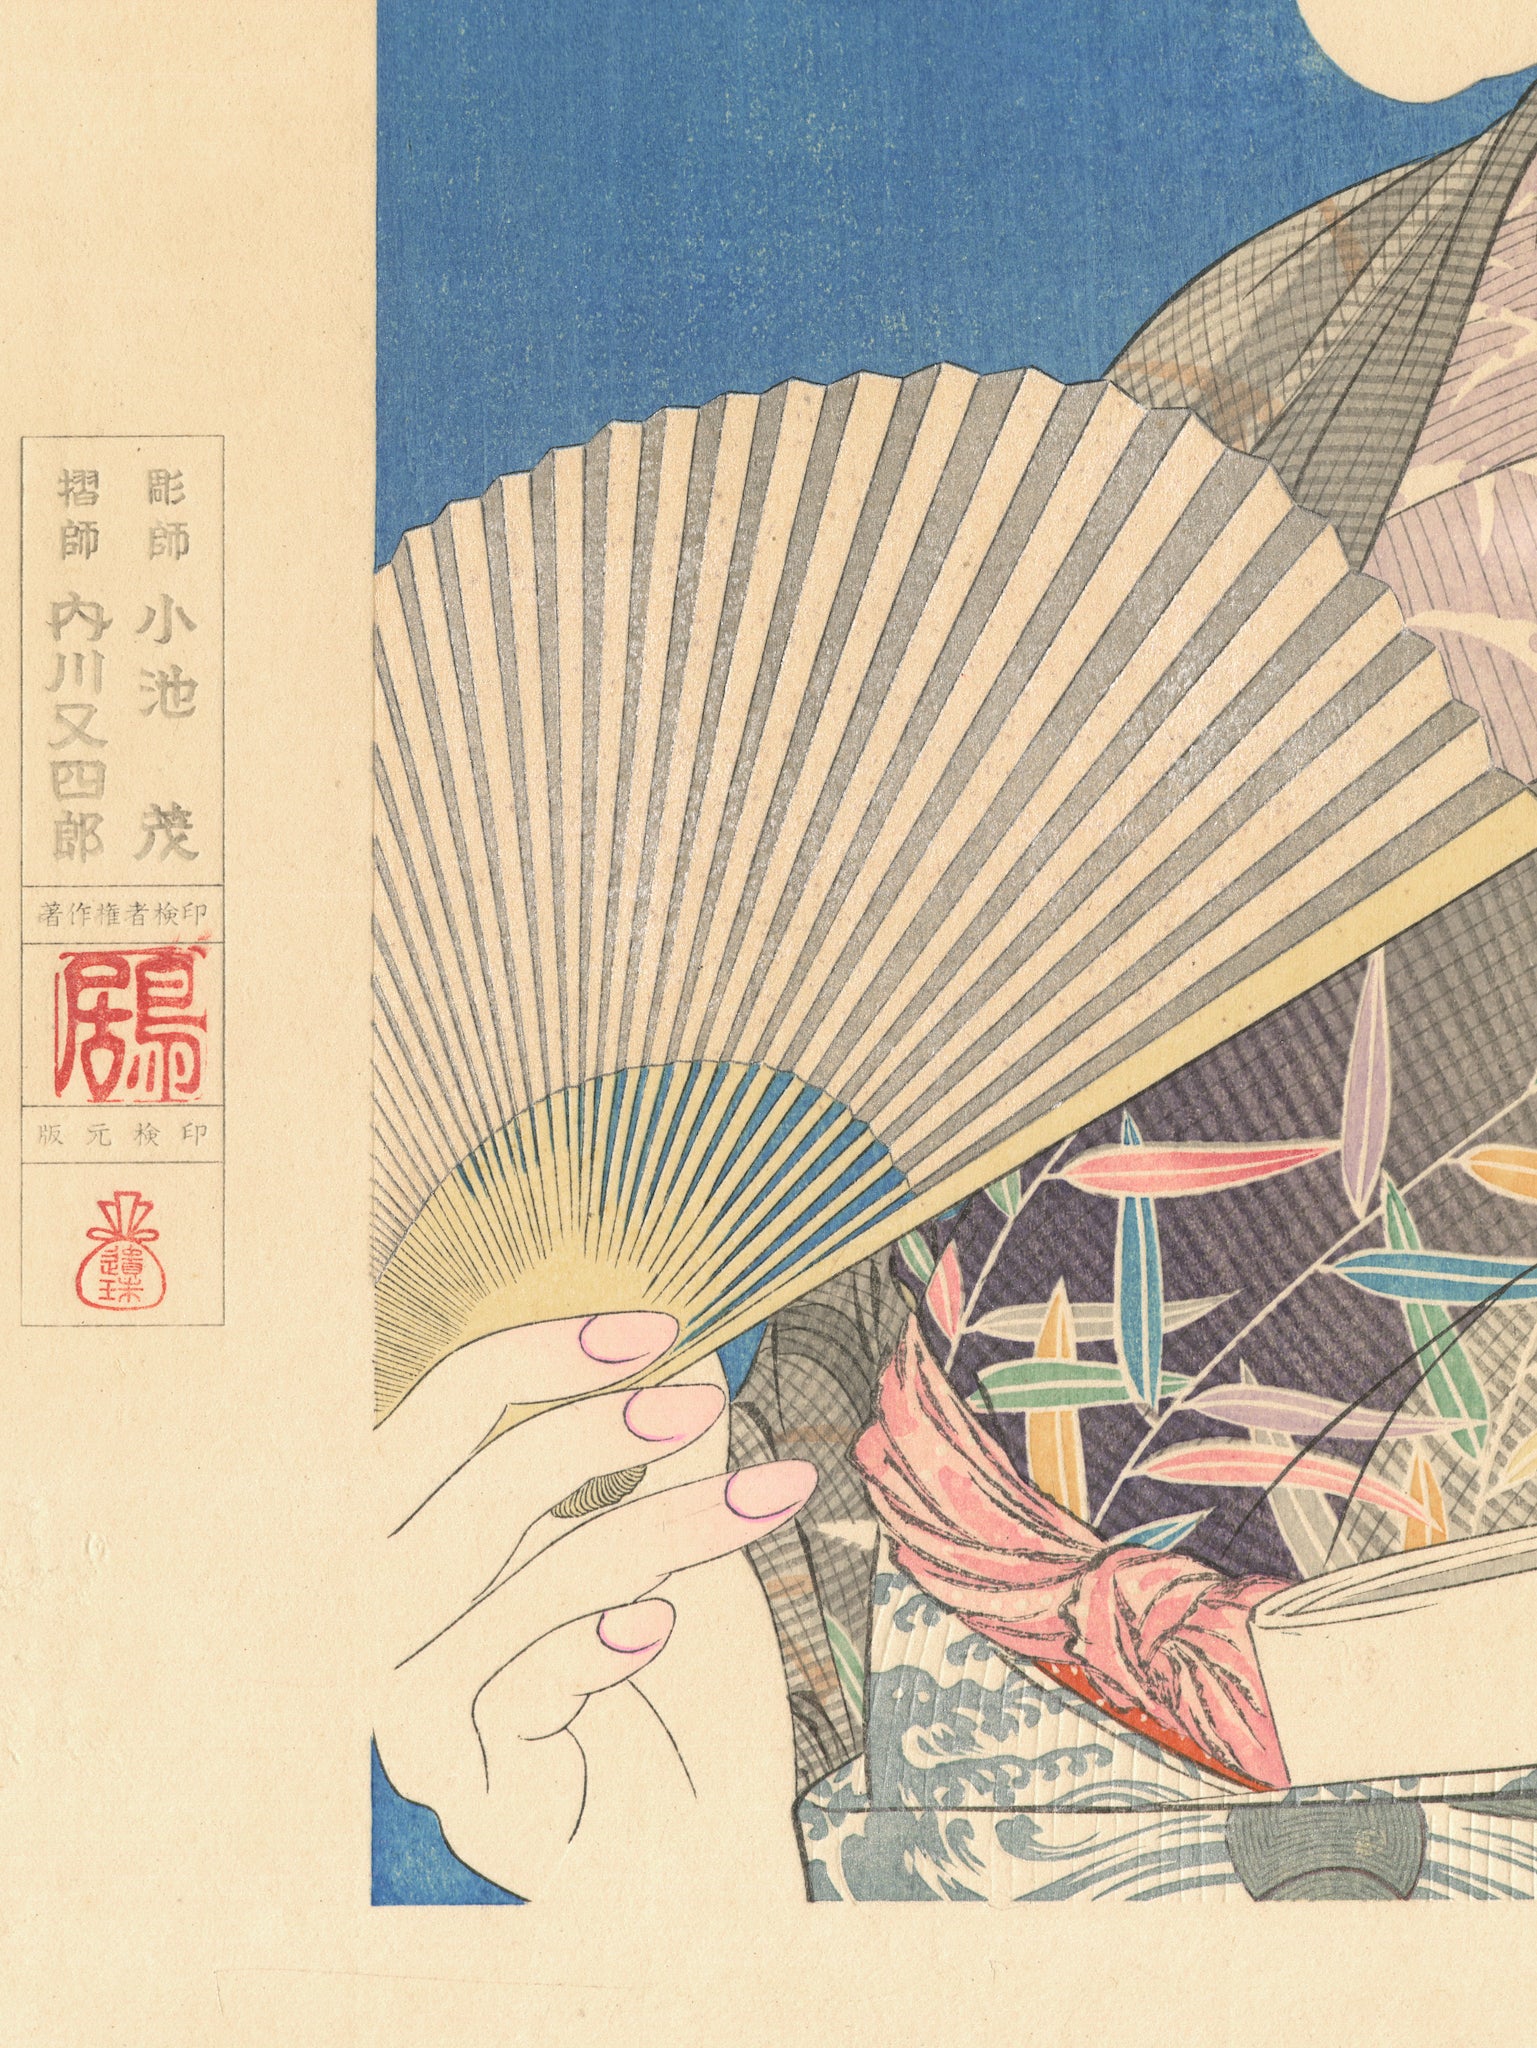 estampe japonaise portrait d'une geisha avec un éventail dans la main, sceau de l'éditeur